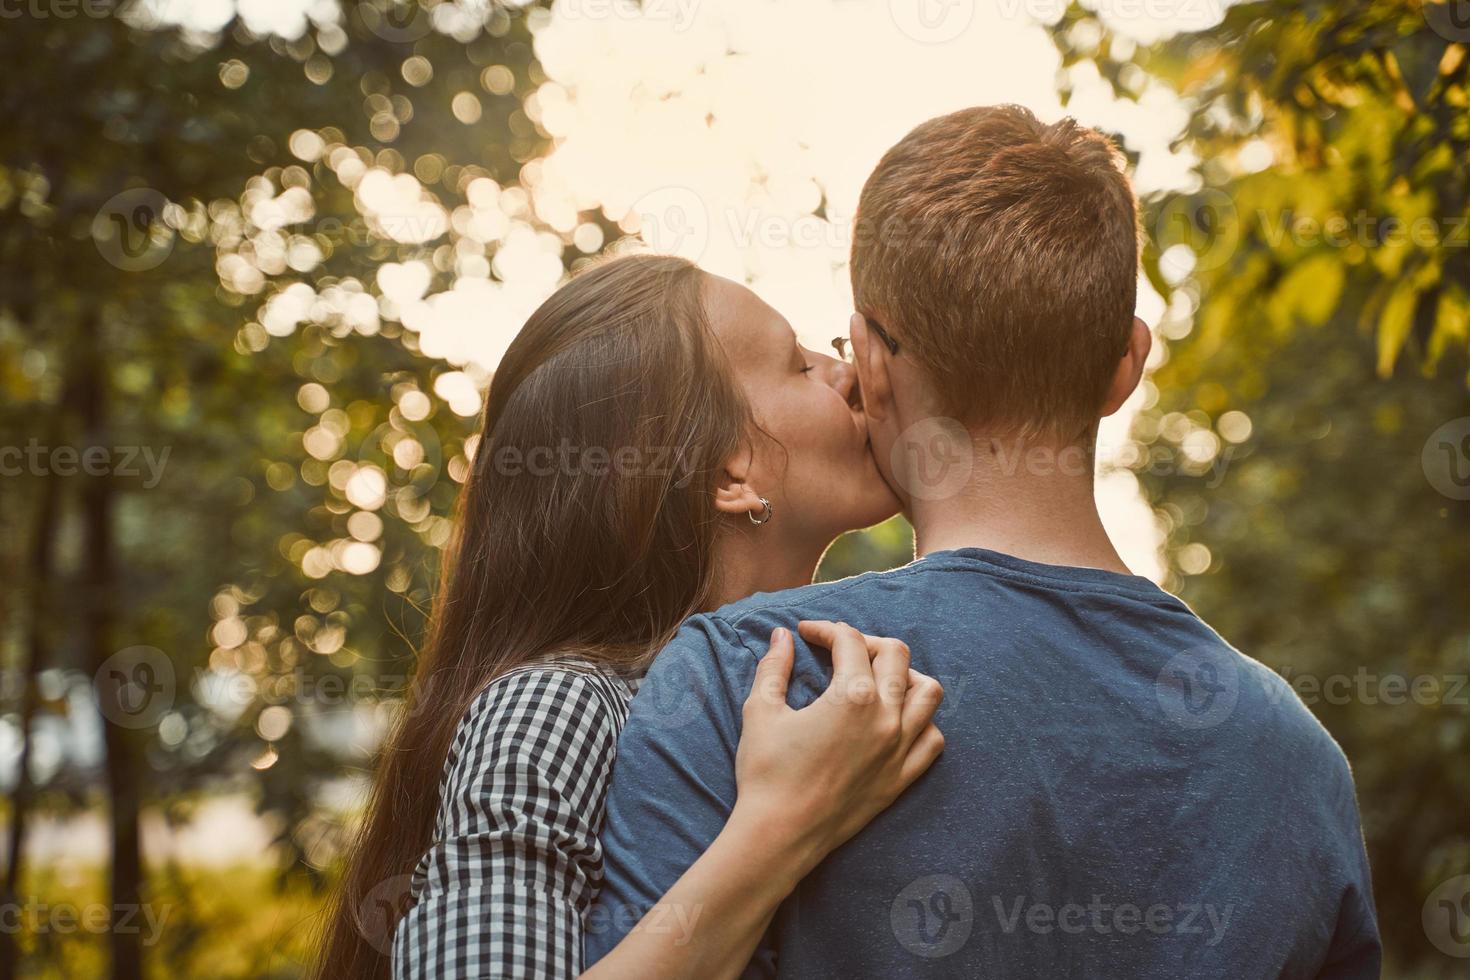 menina beijando menino na bochecha no parque, conceito de amor adolescente foto